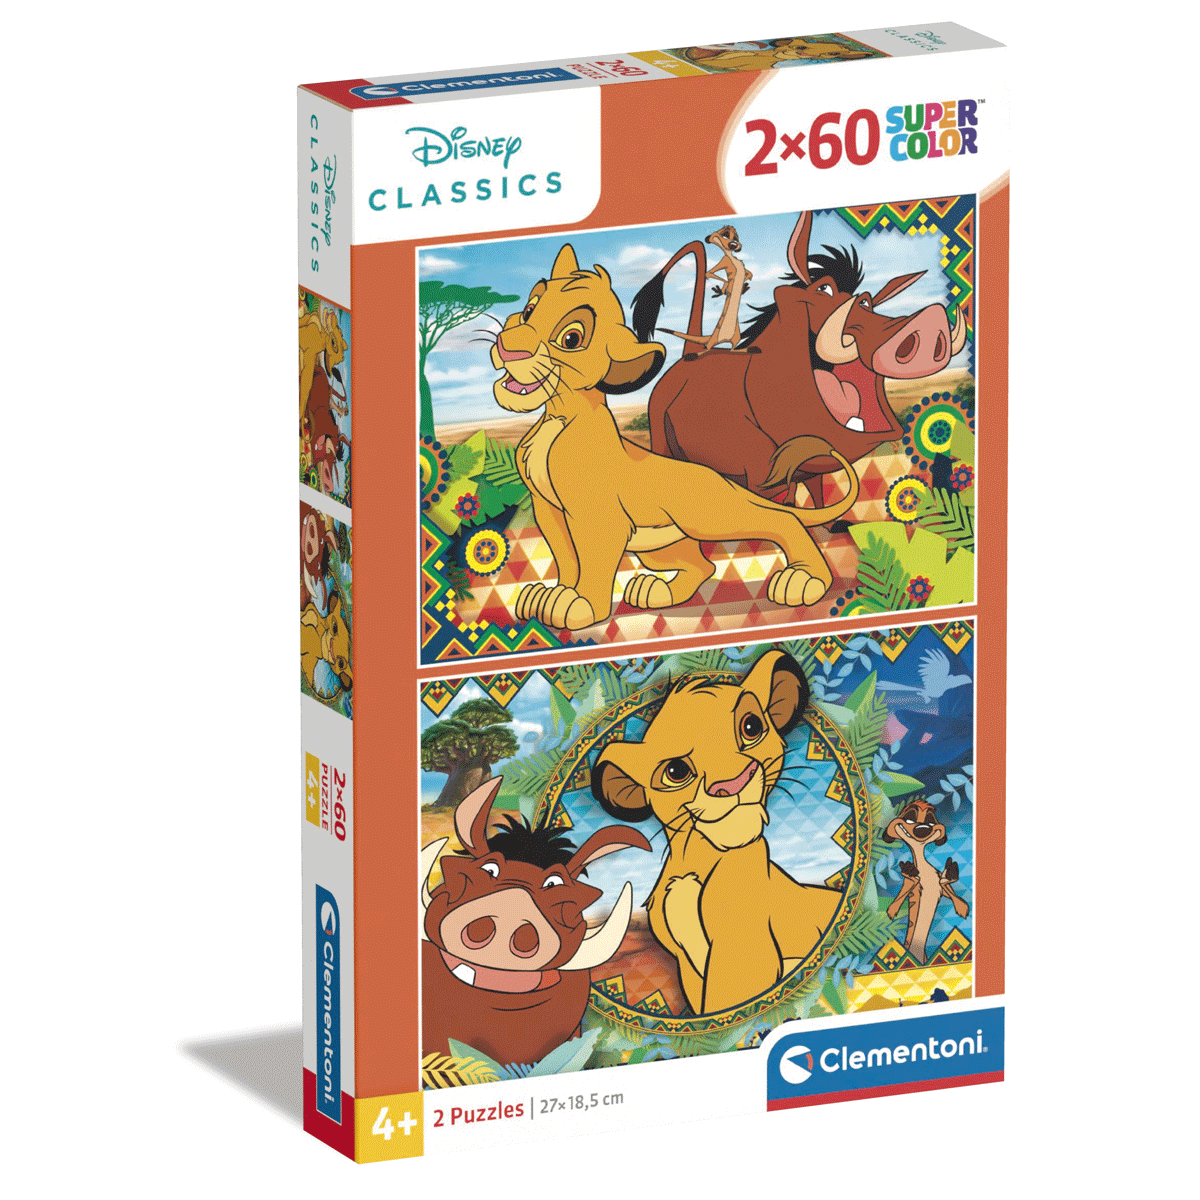 Clementoni supercolor puzzle disney the lion king - 2x60 pezzi, puzzle bambini 4 anni - CLEMENTONI